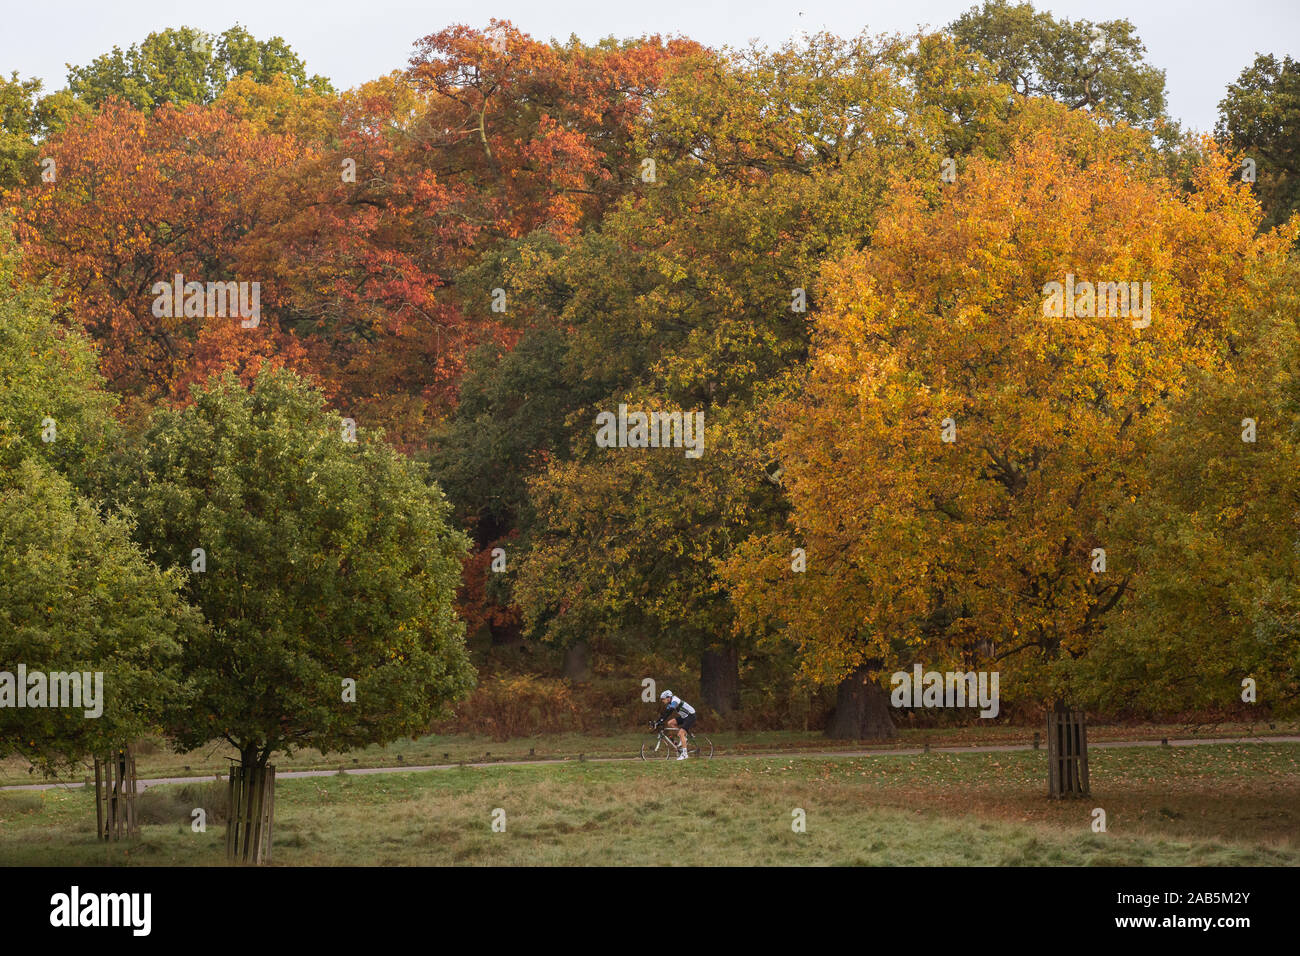 Du vélo dans un cadre coloré couleurs automnales (arbres) à Richmond Deer Park, Londres Banque D'Images